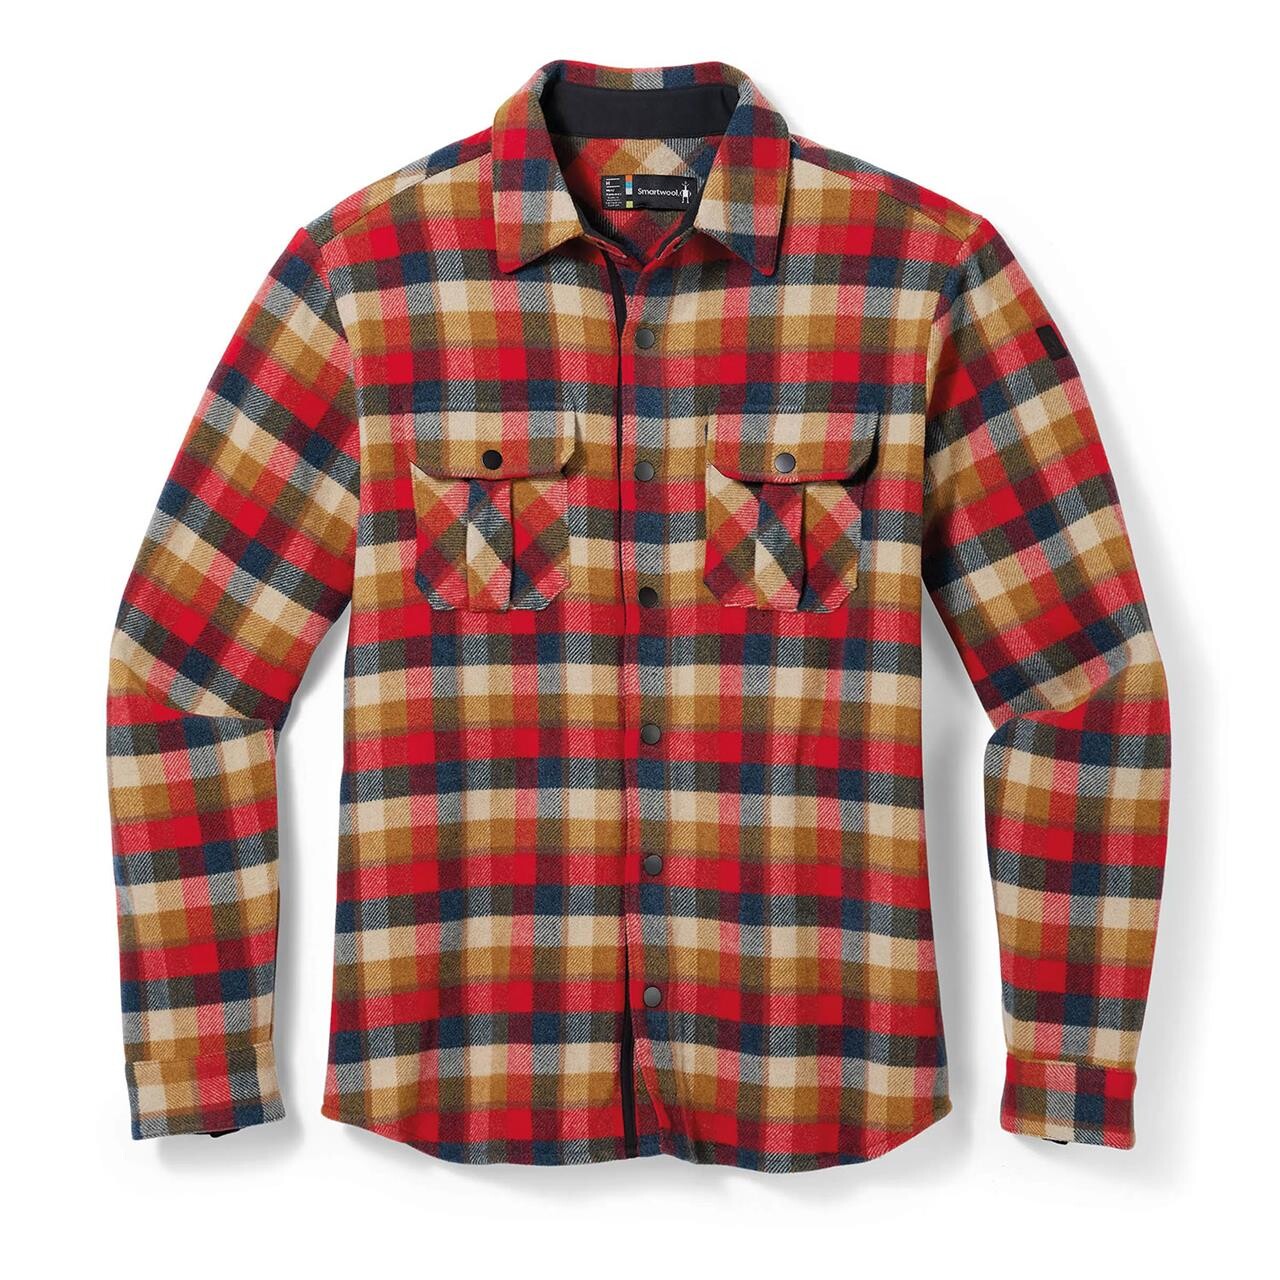 Billede af Smartwool Mens Anchor Line Shirt Jacket (Rød (RHYTMIC RED PLAID) X-large)